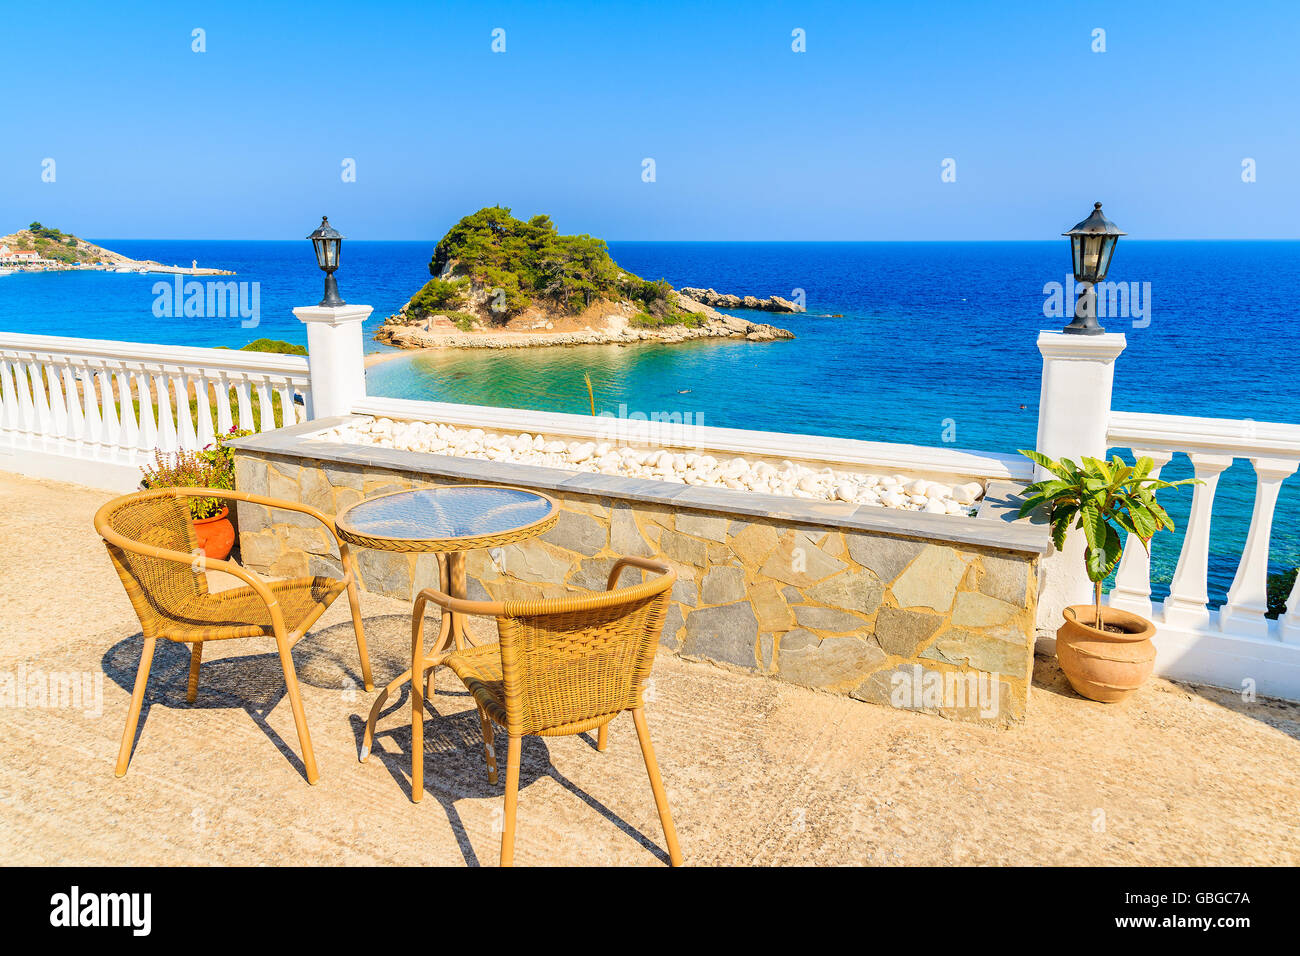 Table avec chaises sur une belle terrasse avec vue sur la baie de Kokkari, l'île de Samos, Grèce Banque D'Images